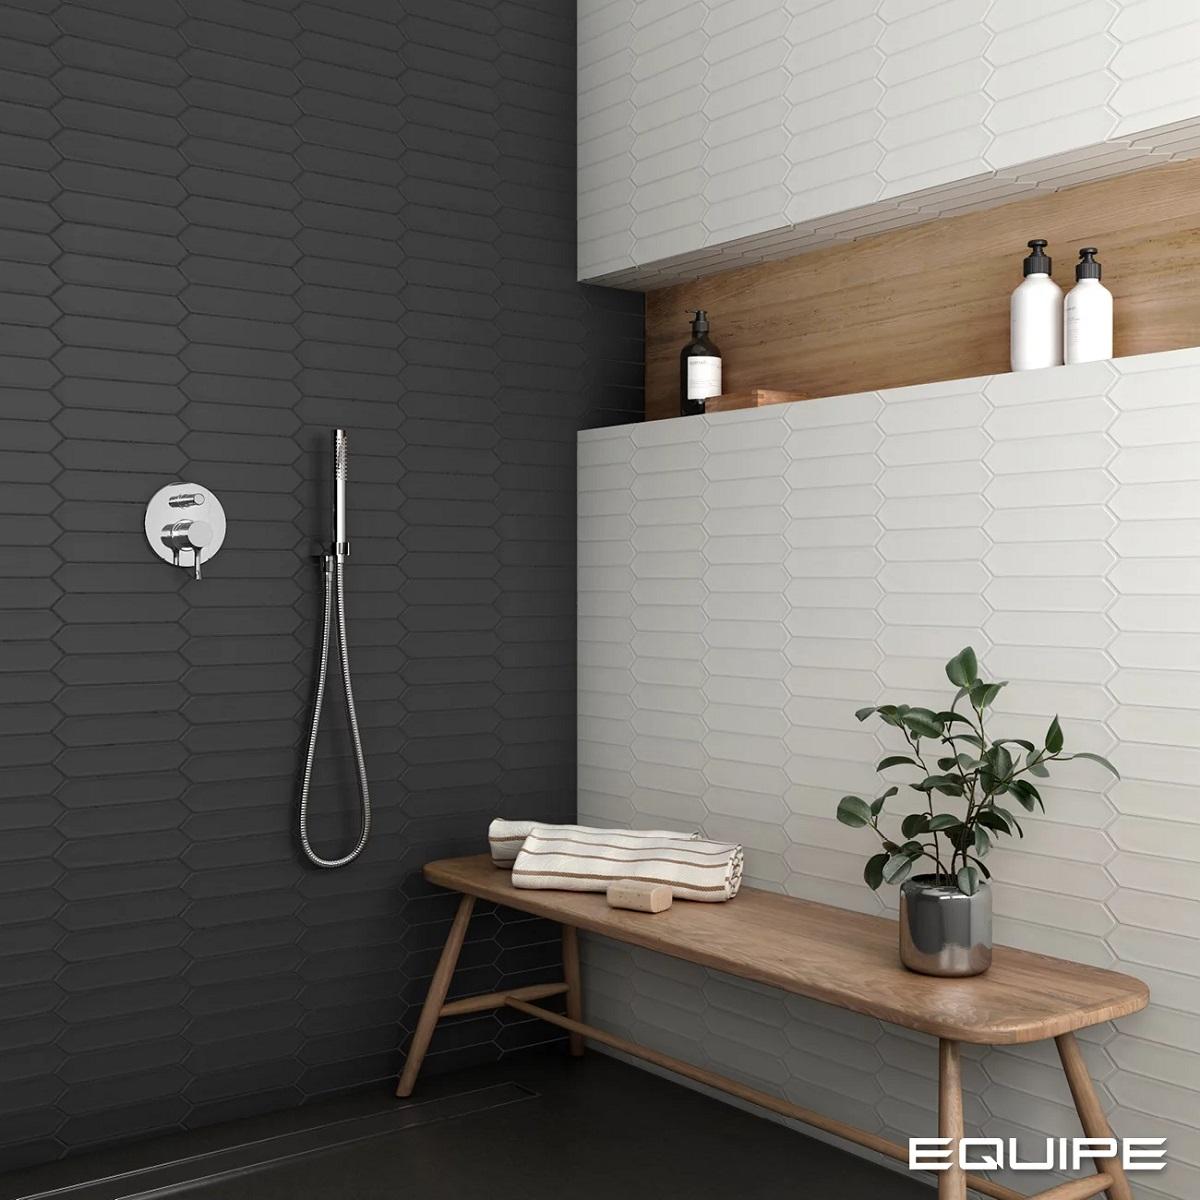 Carrelage uni blanc en chevrons 5X25 sur mur de salle de bain moderne noir avec étagères en bois et accessoires salle de bains